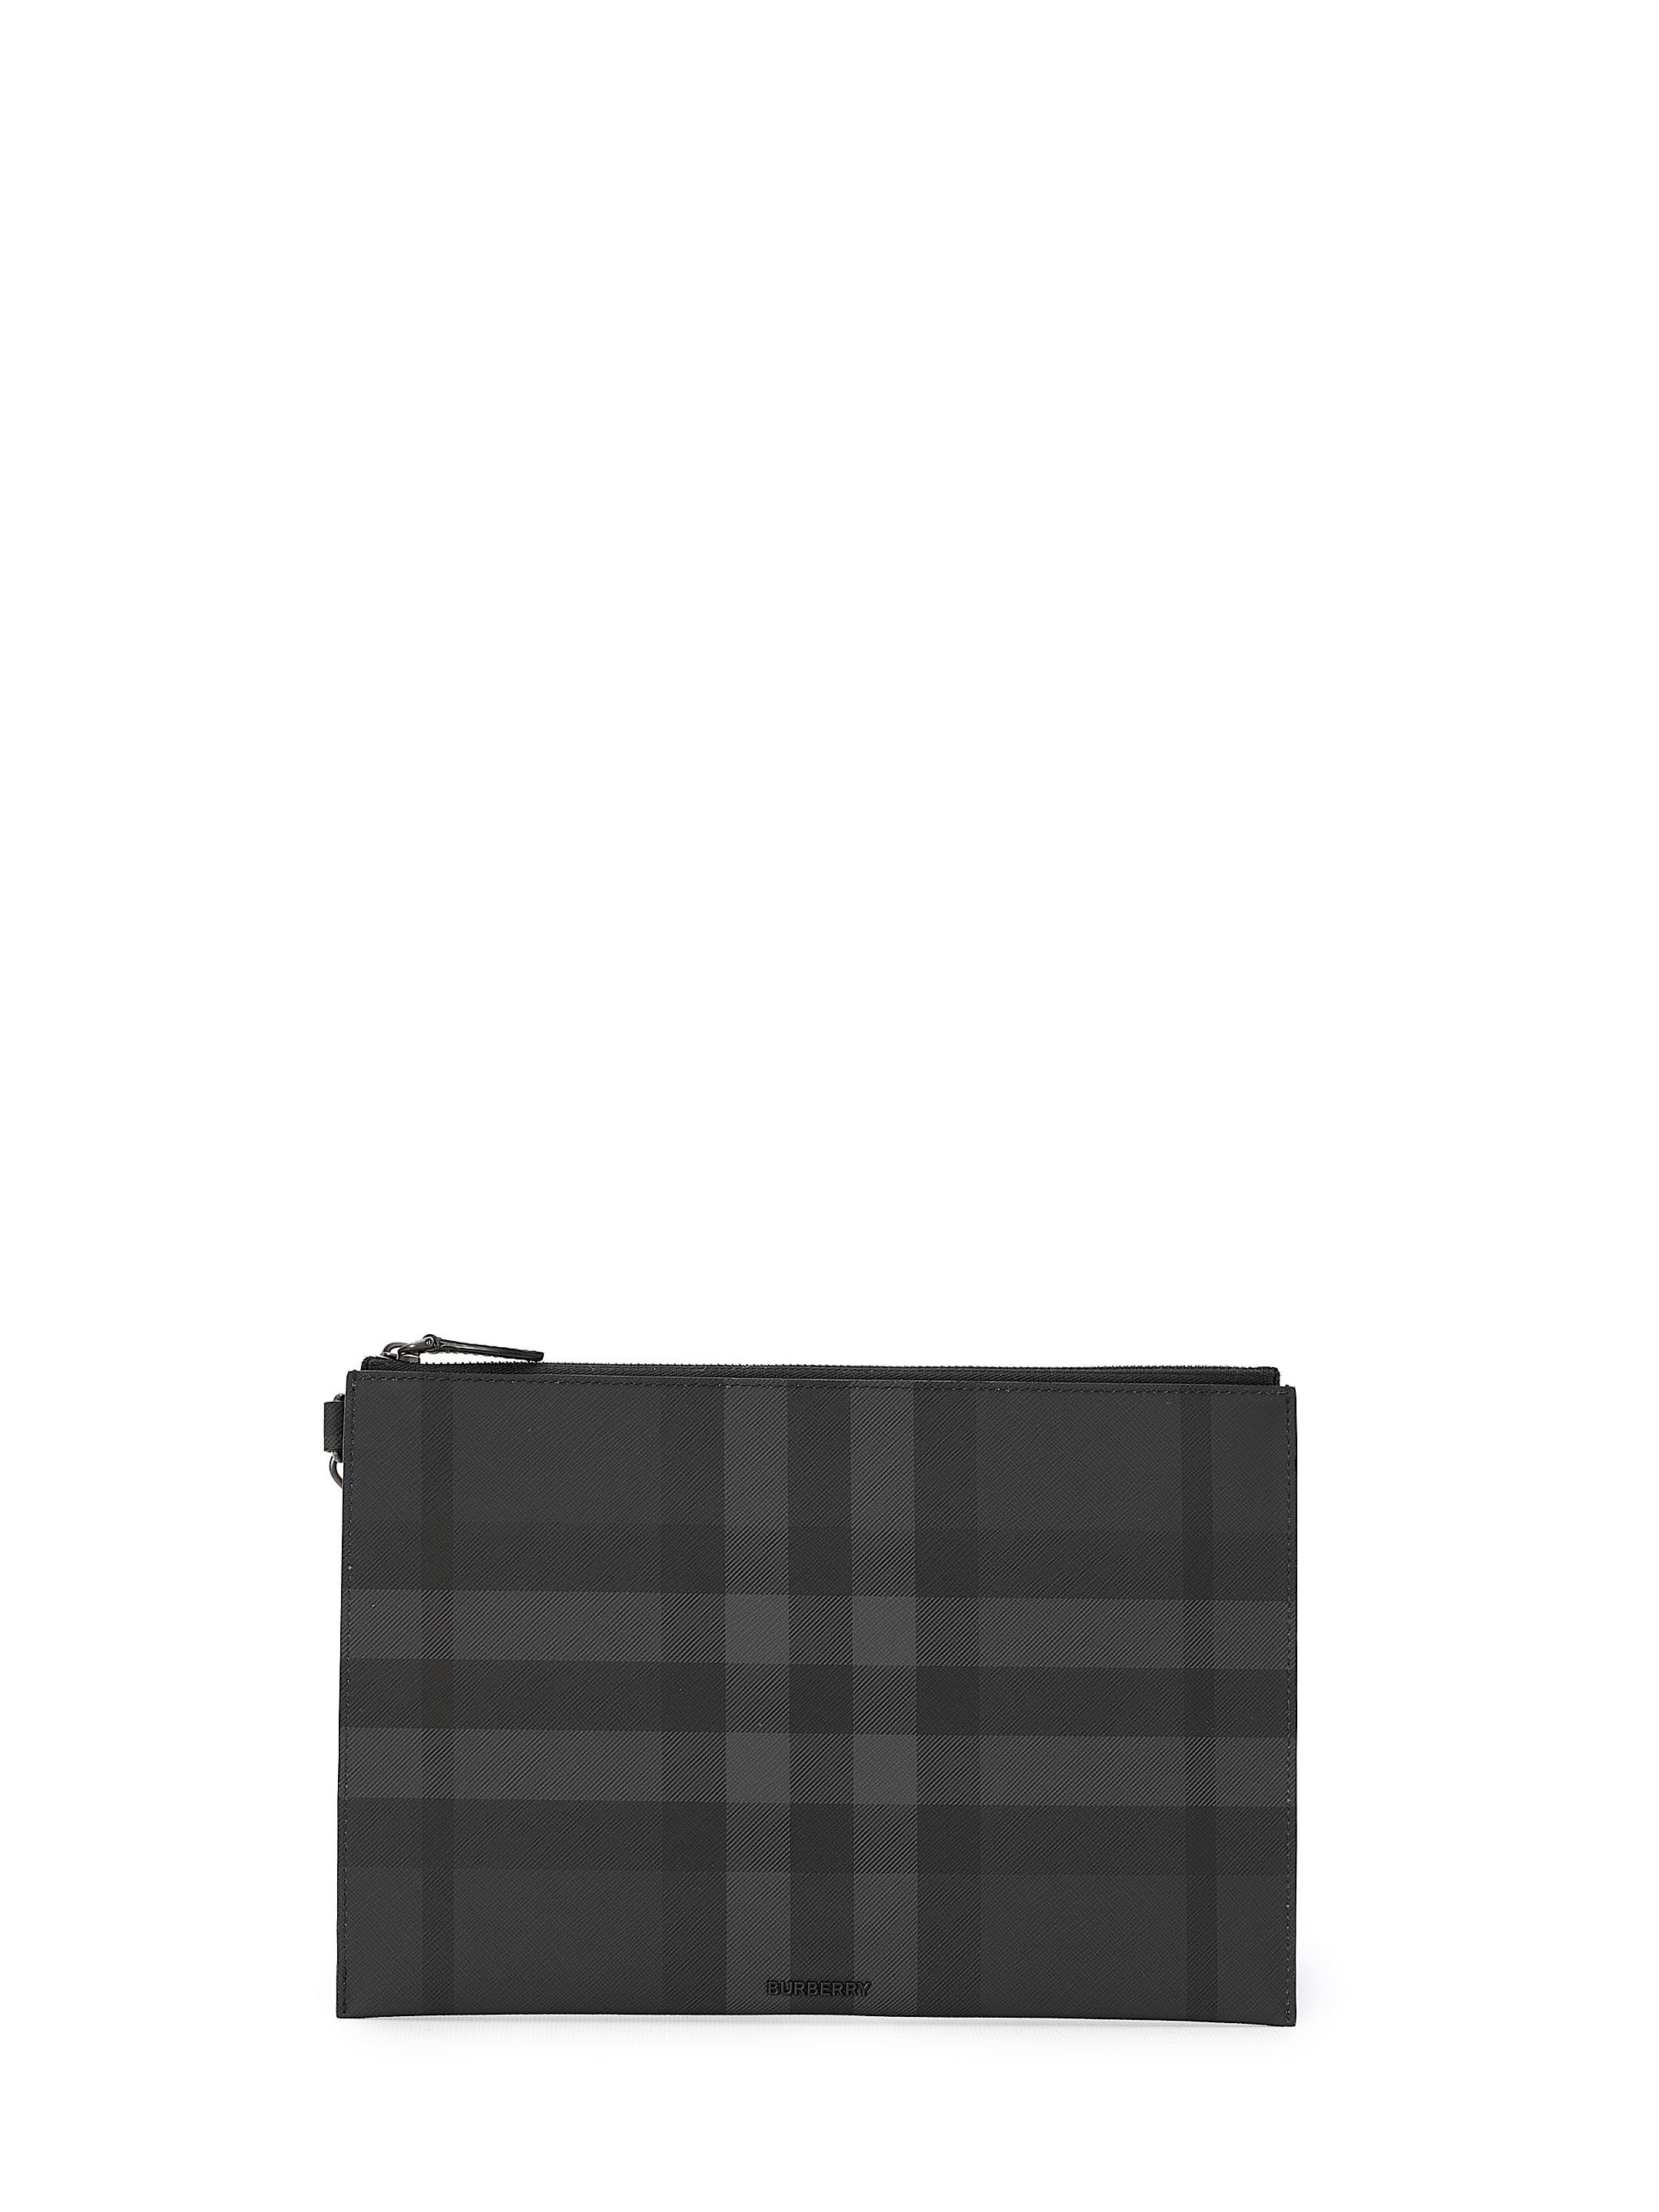 розовый кожаный клатч burberry черный Сумка Burberry Check Large, серый